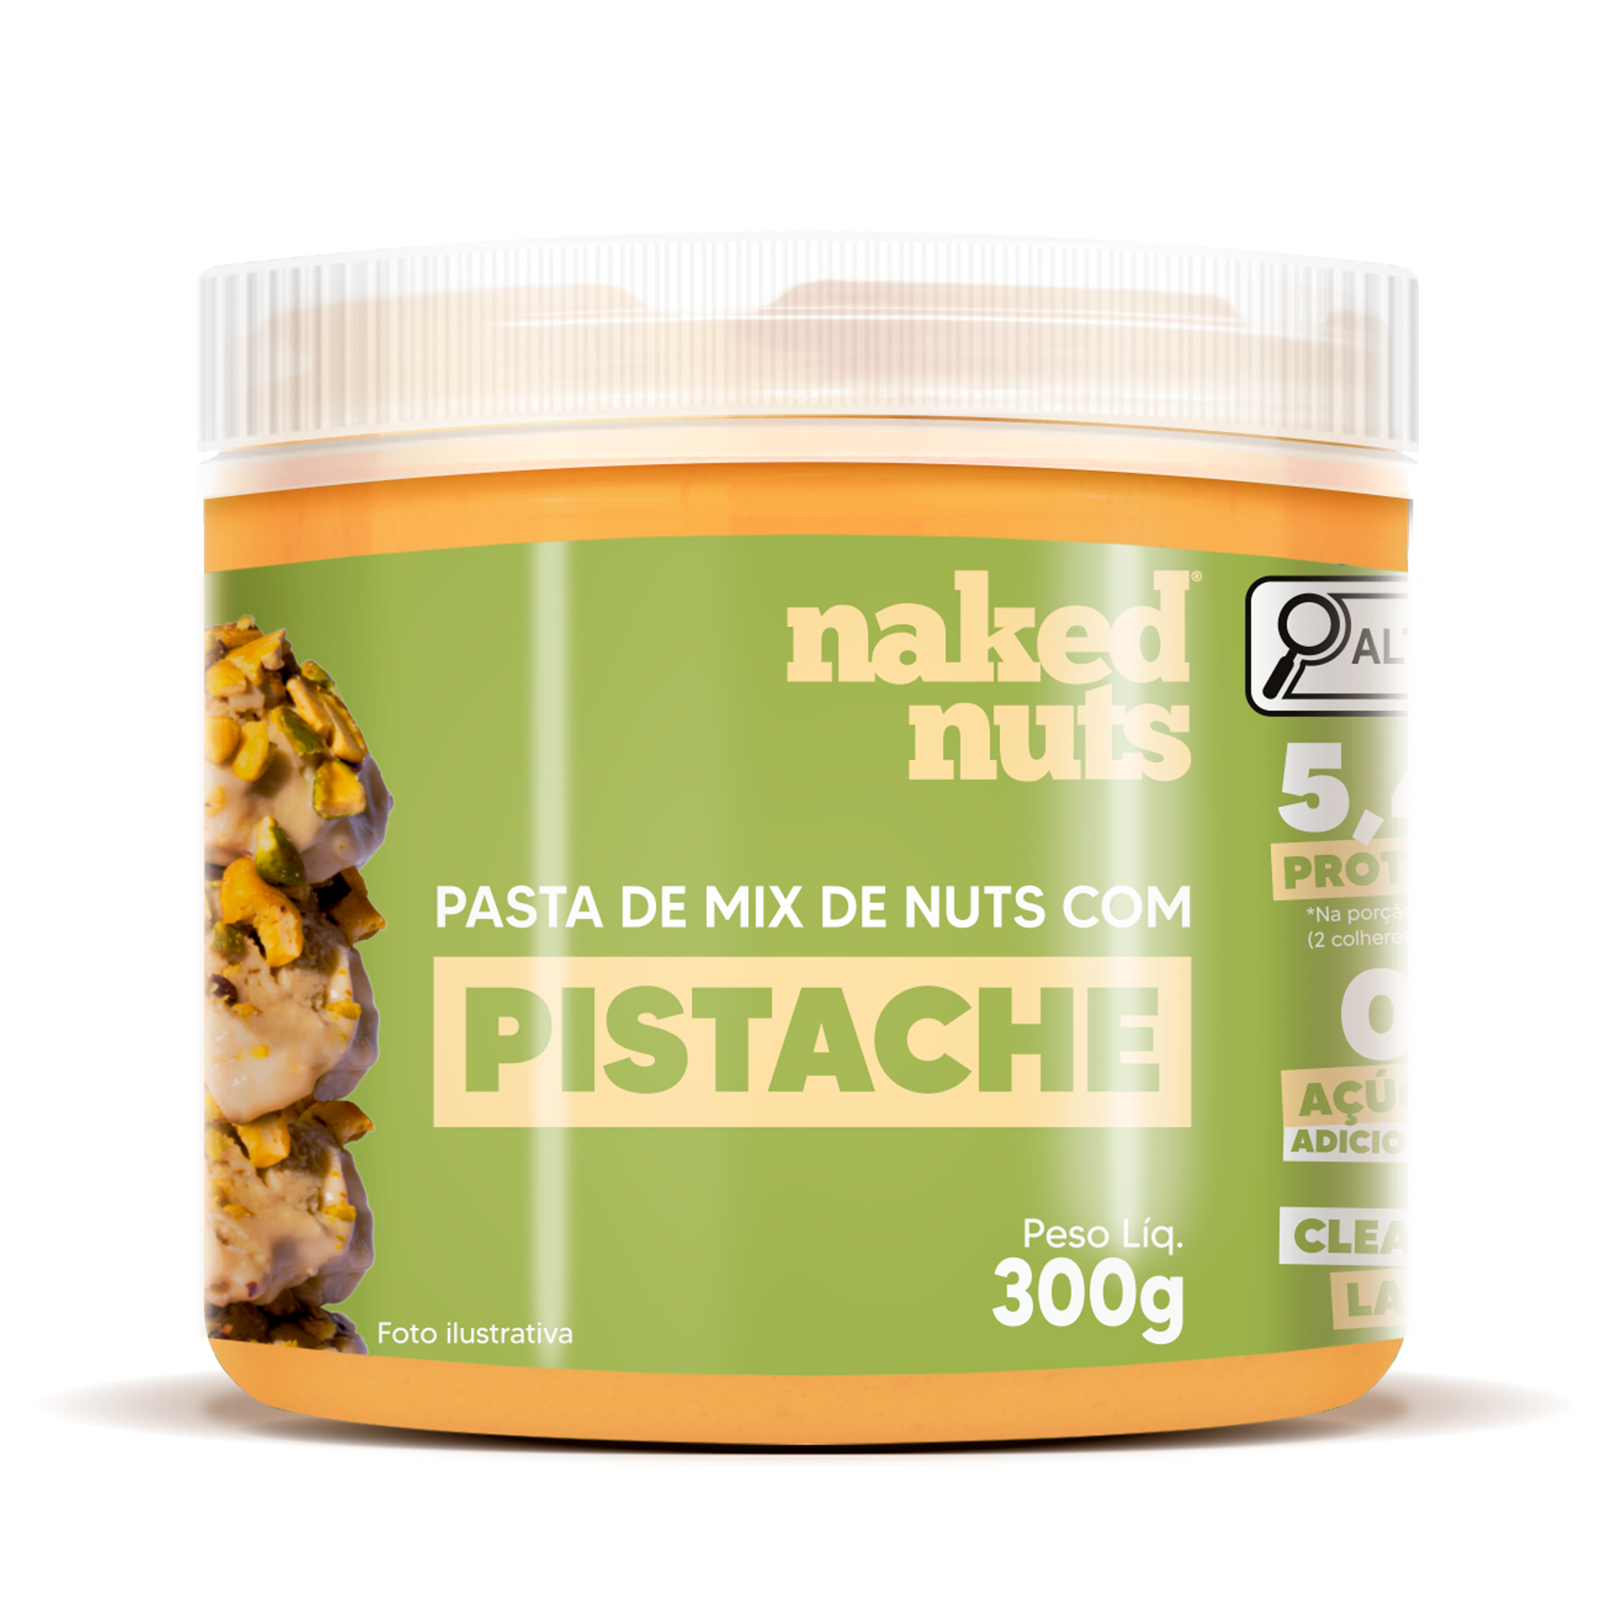 Pasta de Pistache - Naked Nuts